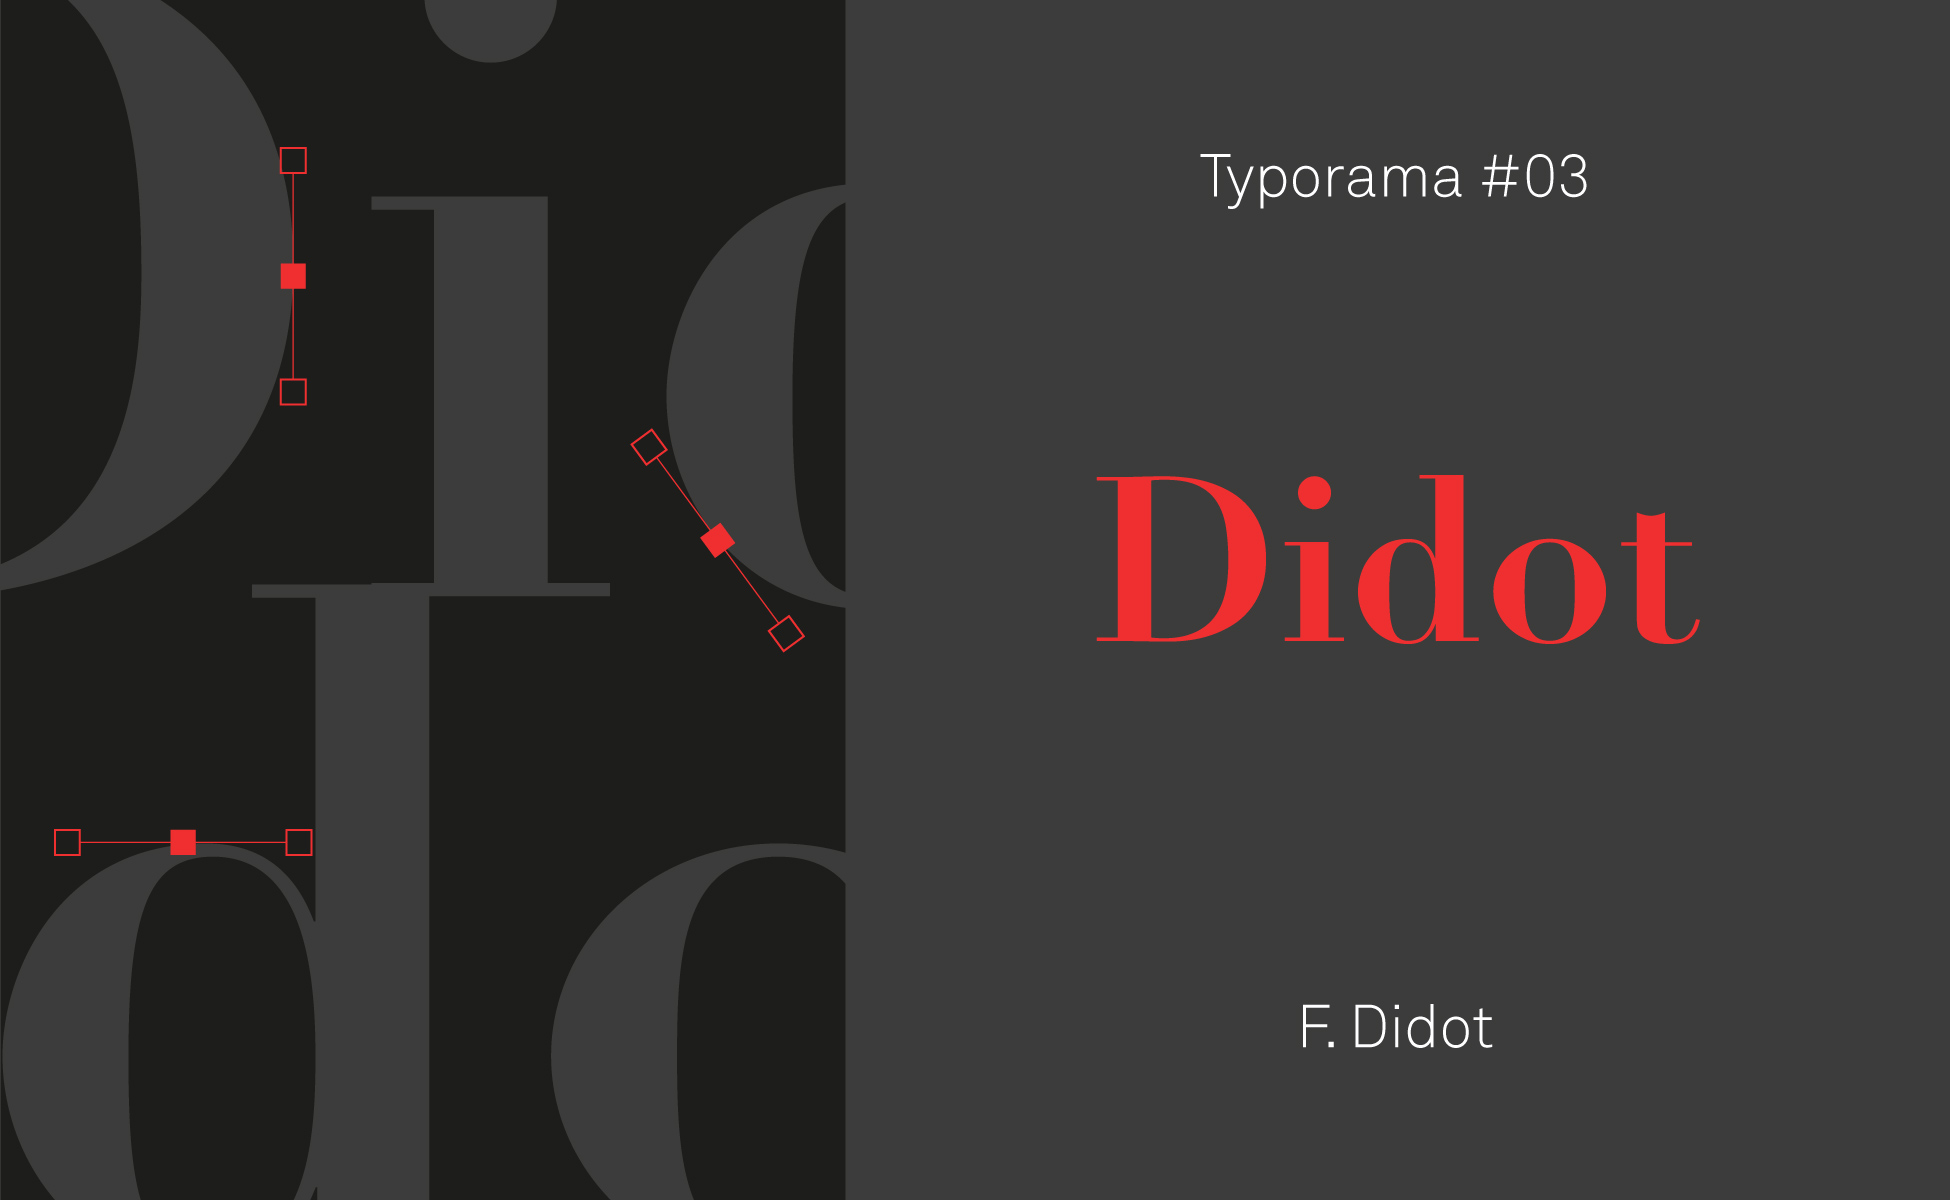 histoire du caractère typographique Didot